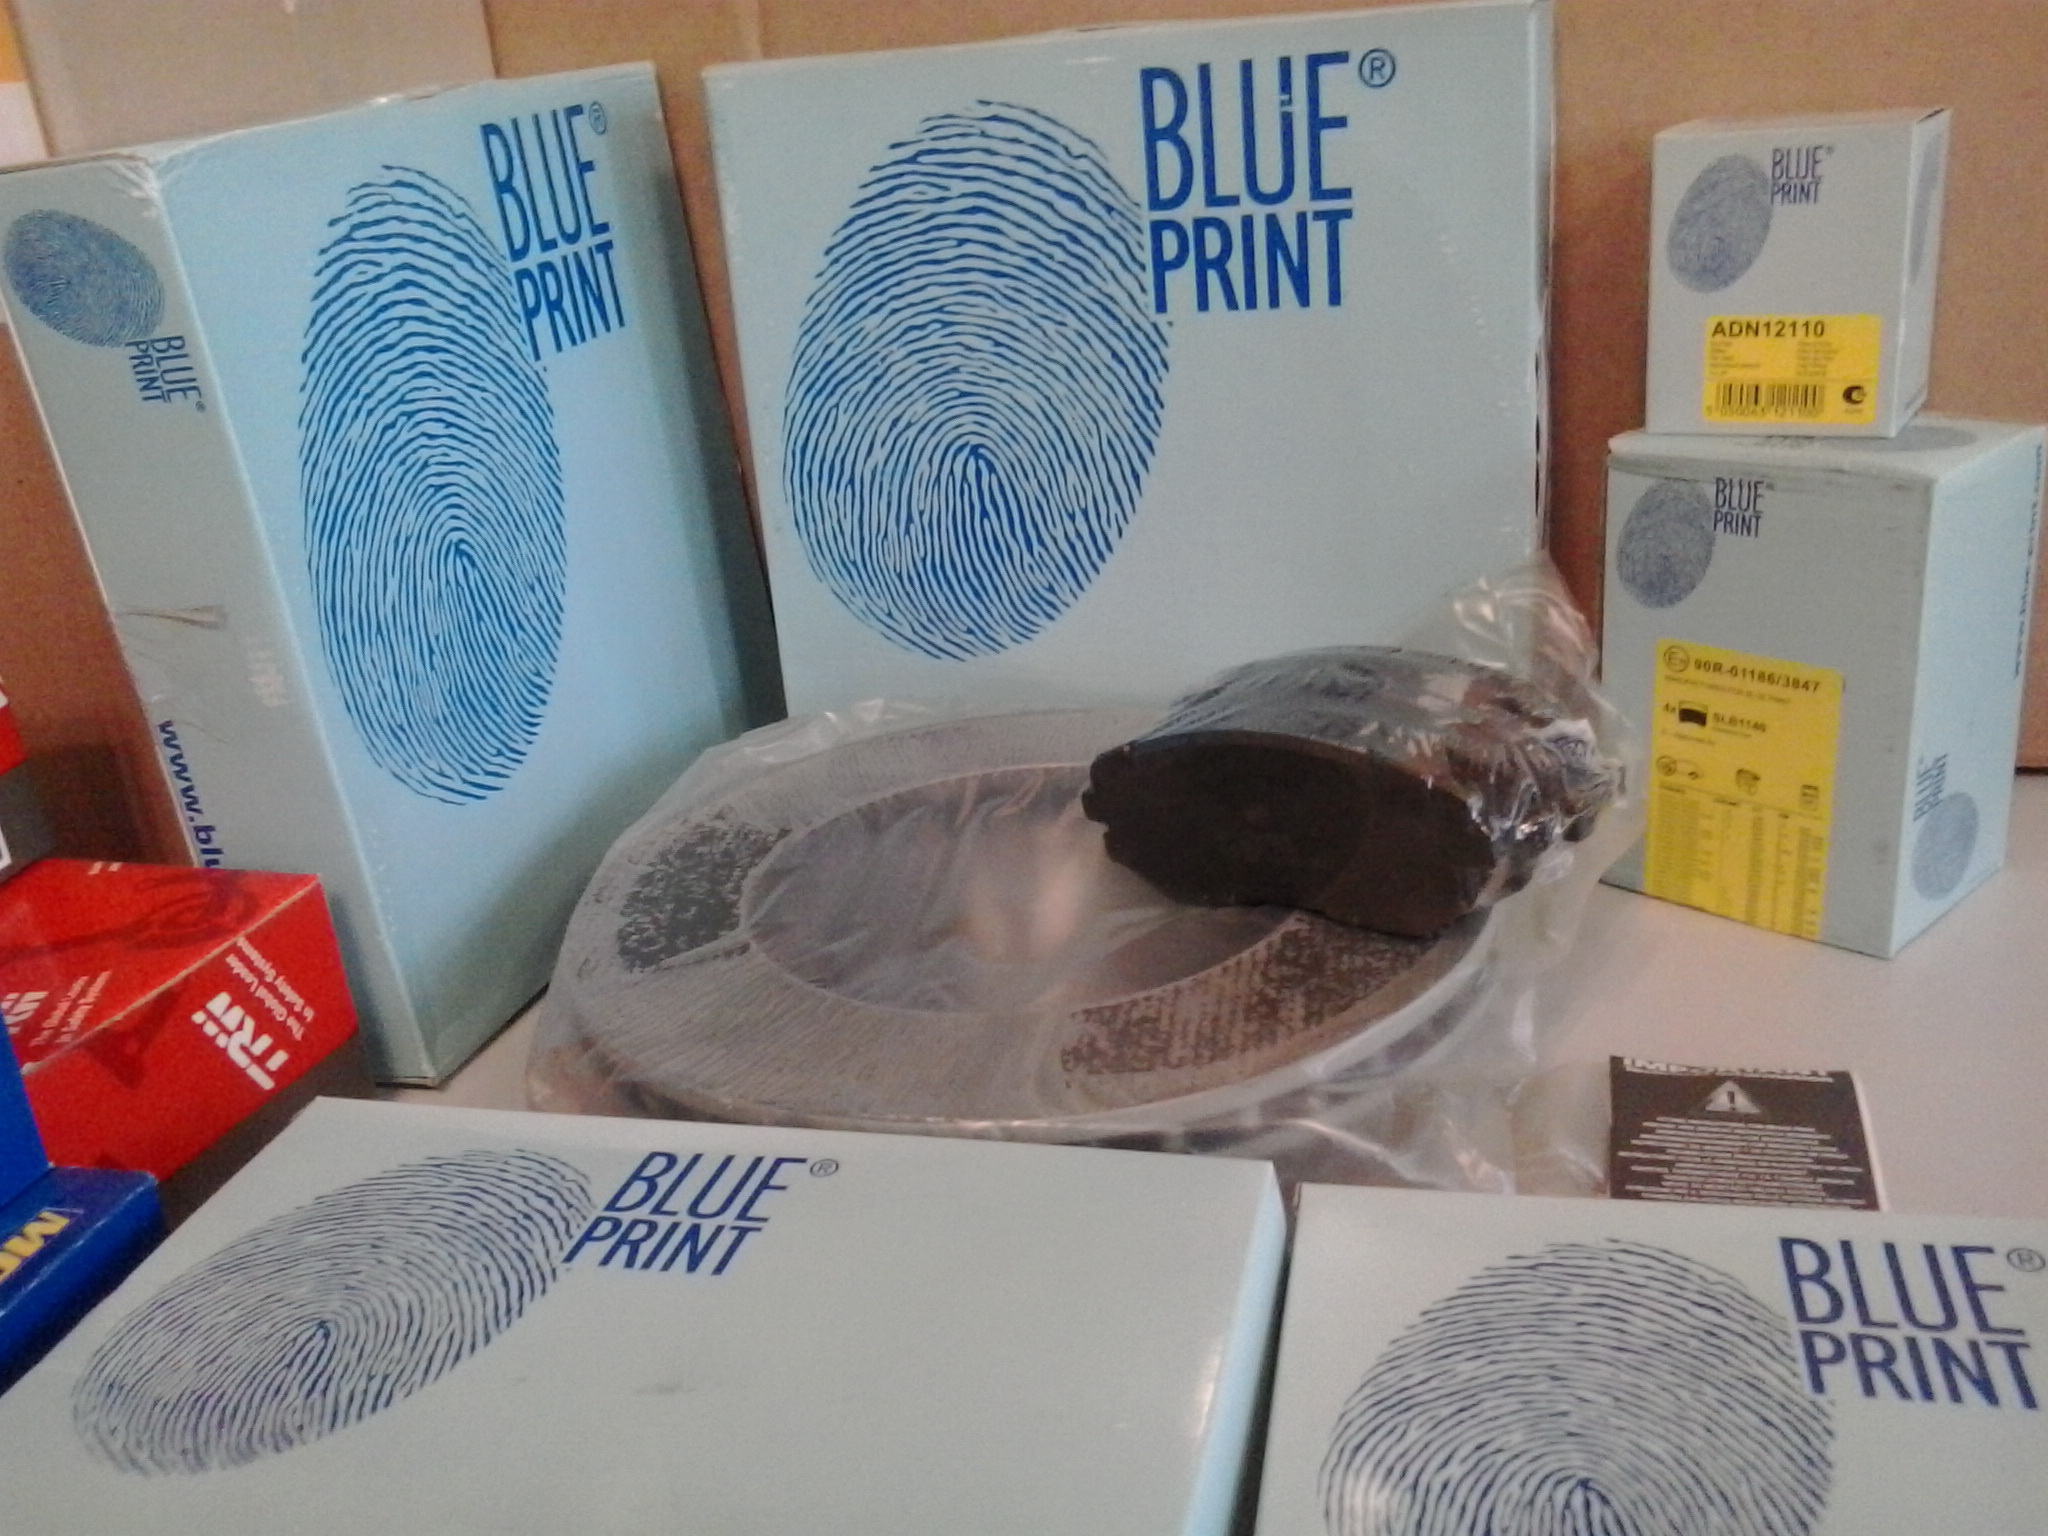  BluePrint  